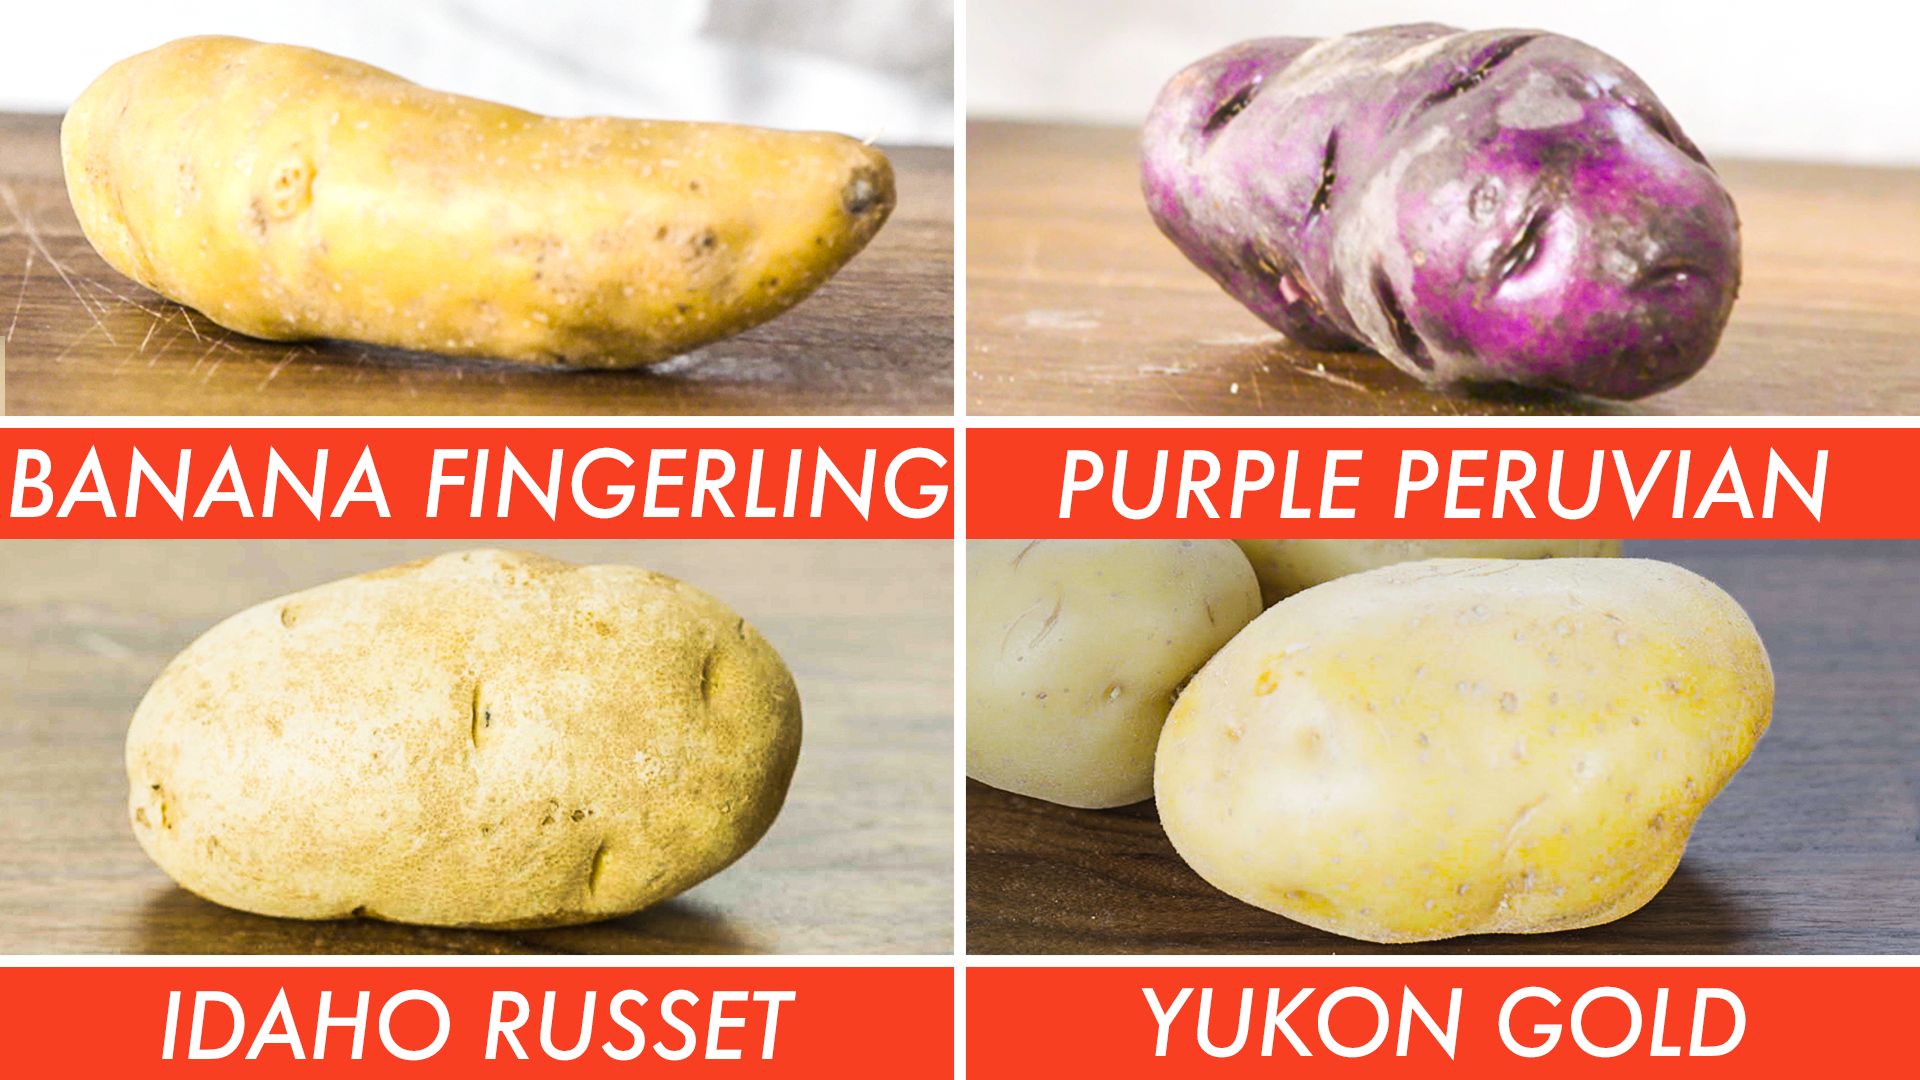 Epicurious Potato Ingredient Guide Pilot 